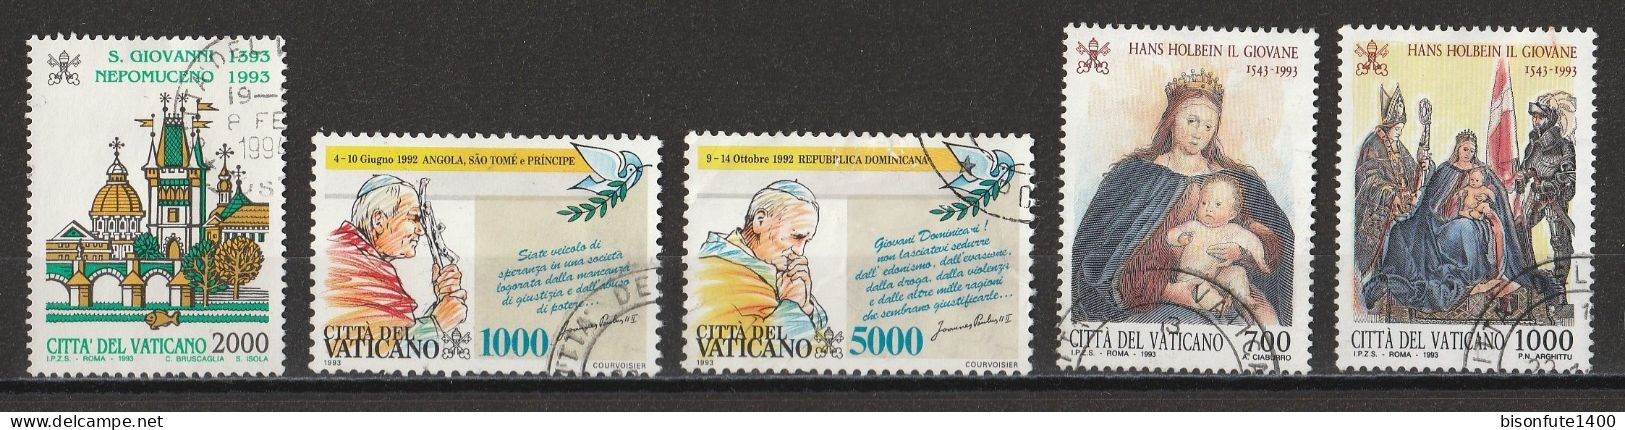 Vatican 1993 : Timbres Yvert & Tellier N° 962 - 964 - 965 - 966 - 967 Et 968 Oblitérés. - Oblitérés